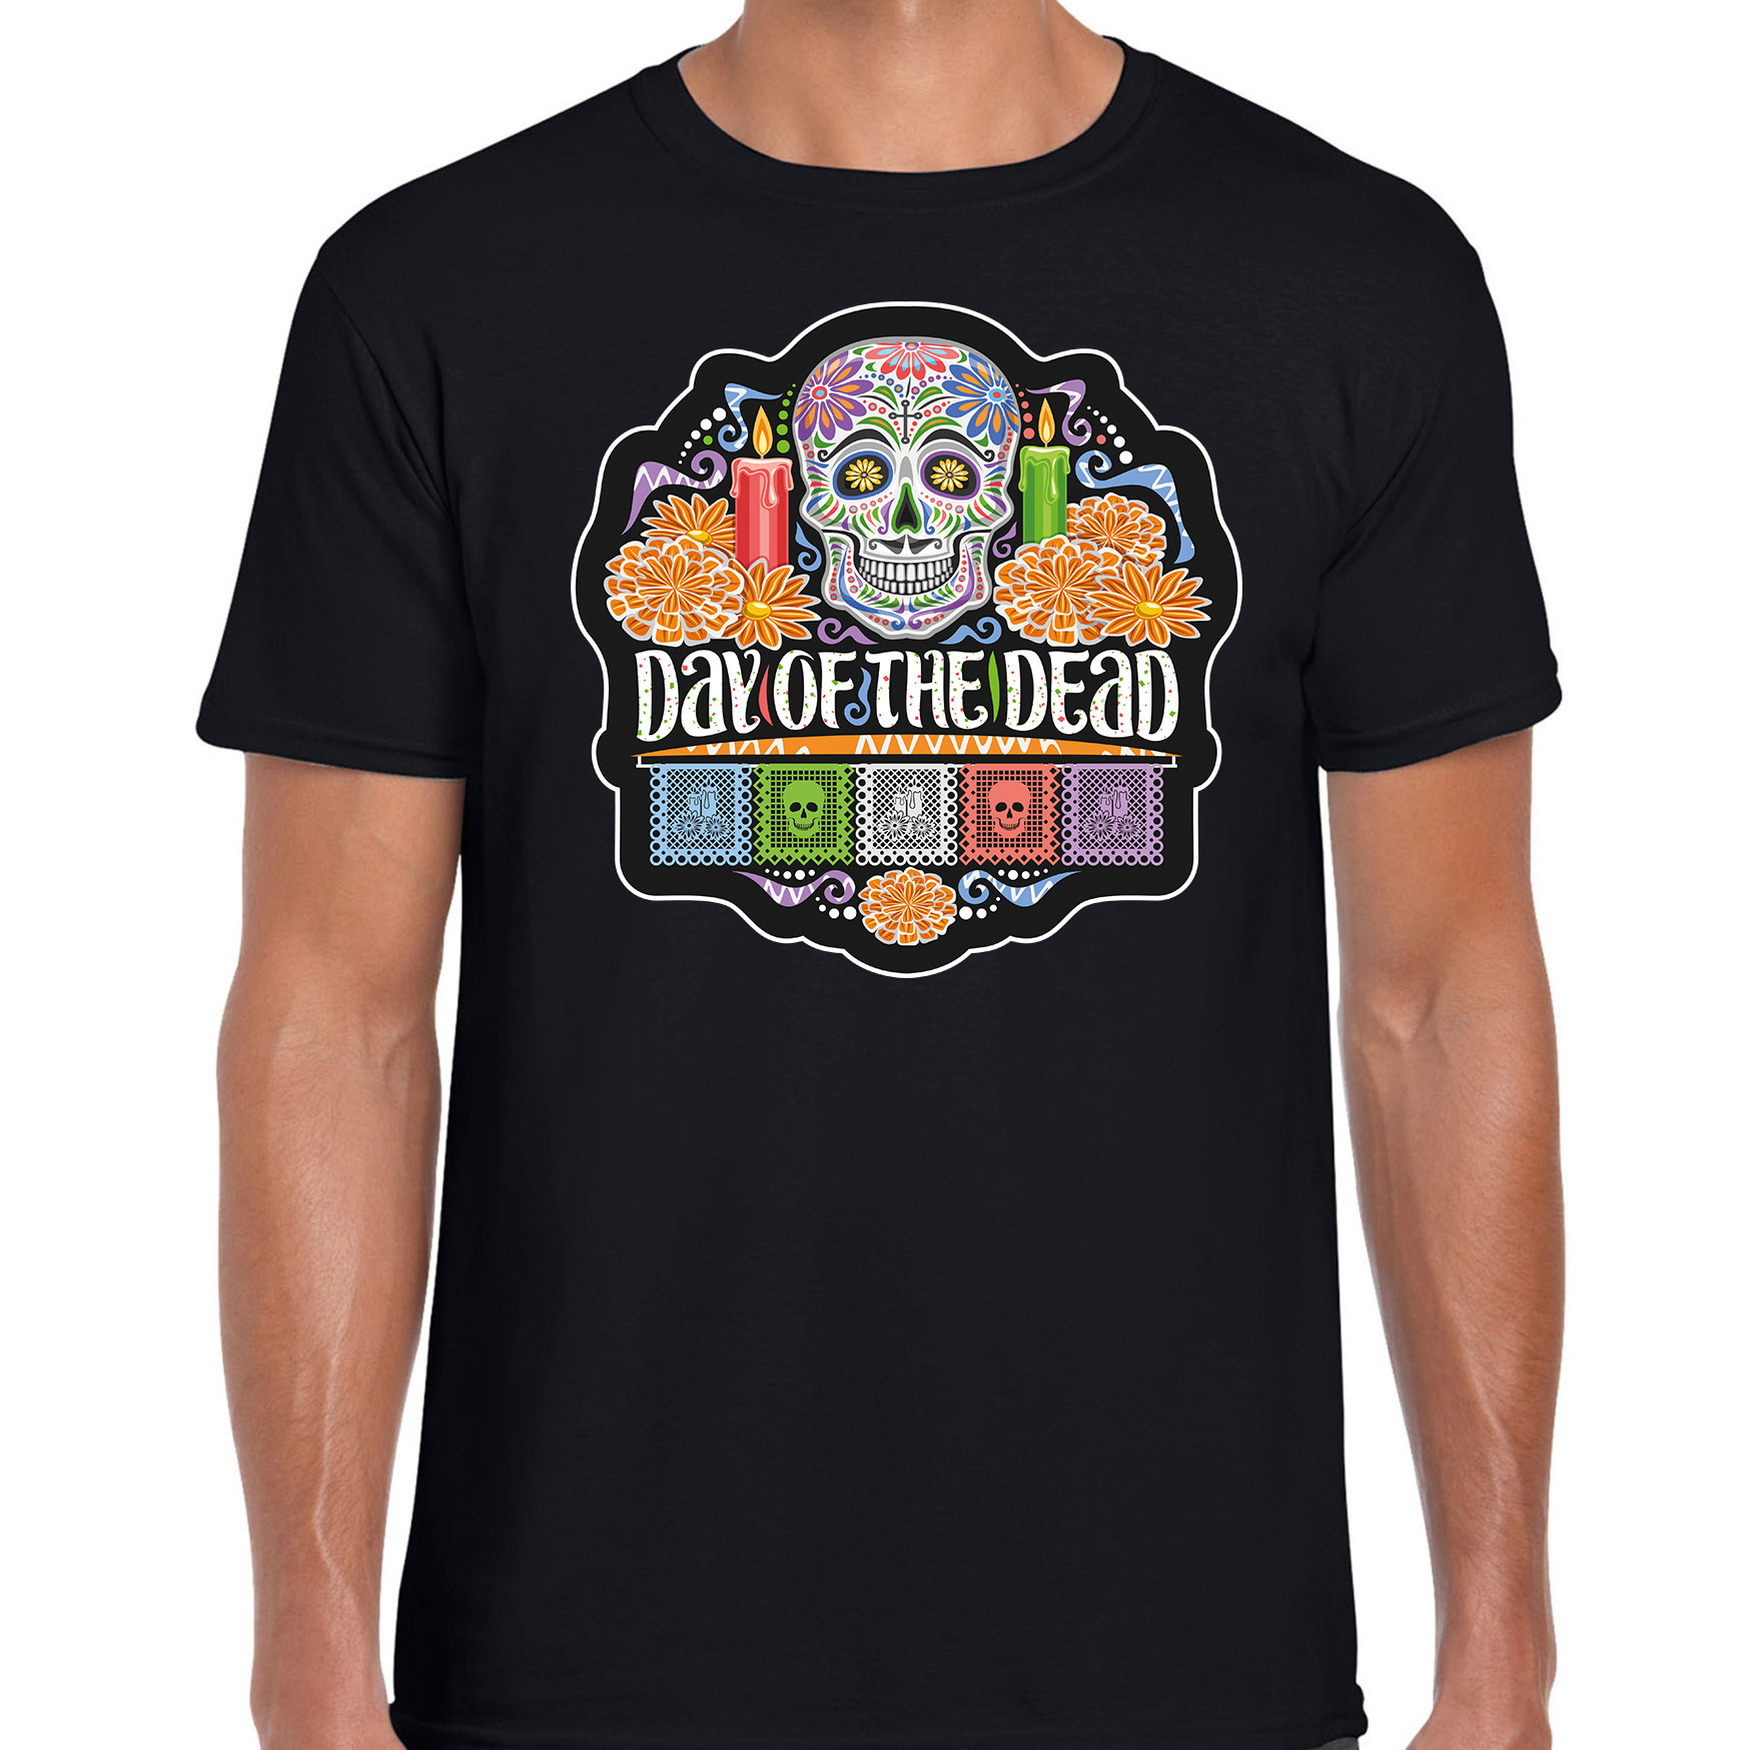 Day of the dead-Dag van de doden Halloween verkleed t-shirt-outfit zwart voor heren